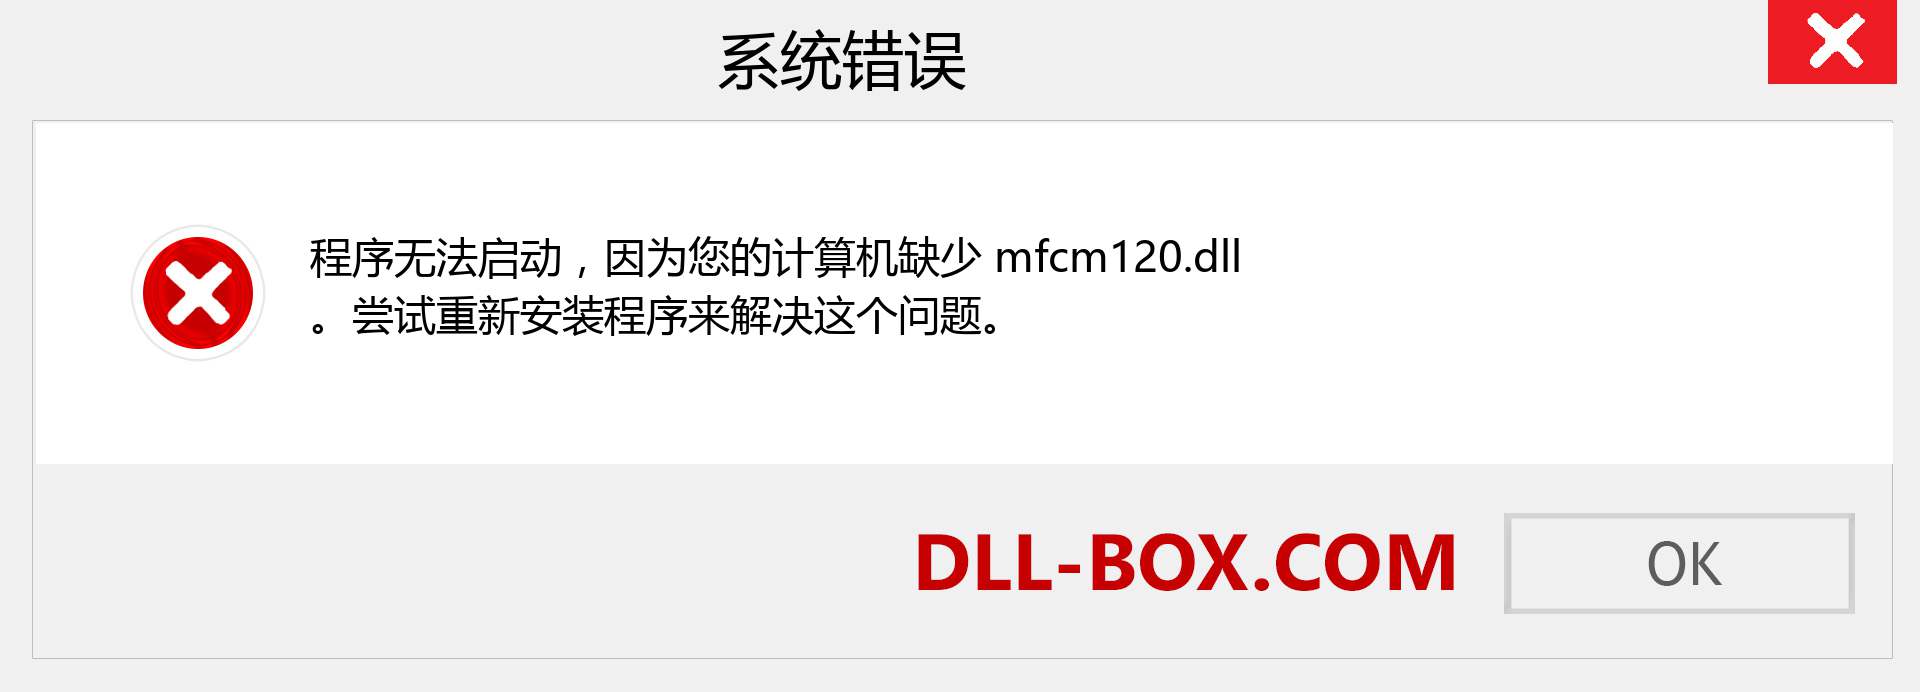 mfcm120.dll 文件丢失？。 适用于 Windows 7、8、10 的下载 - 修复 Windows、照片、图像上的 mfcm120 dll 丢失错误